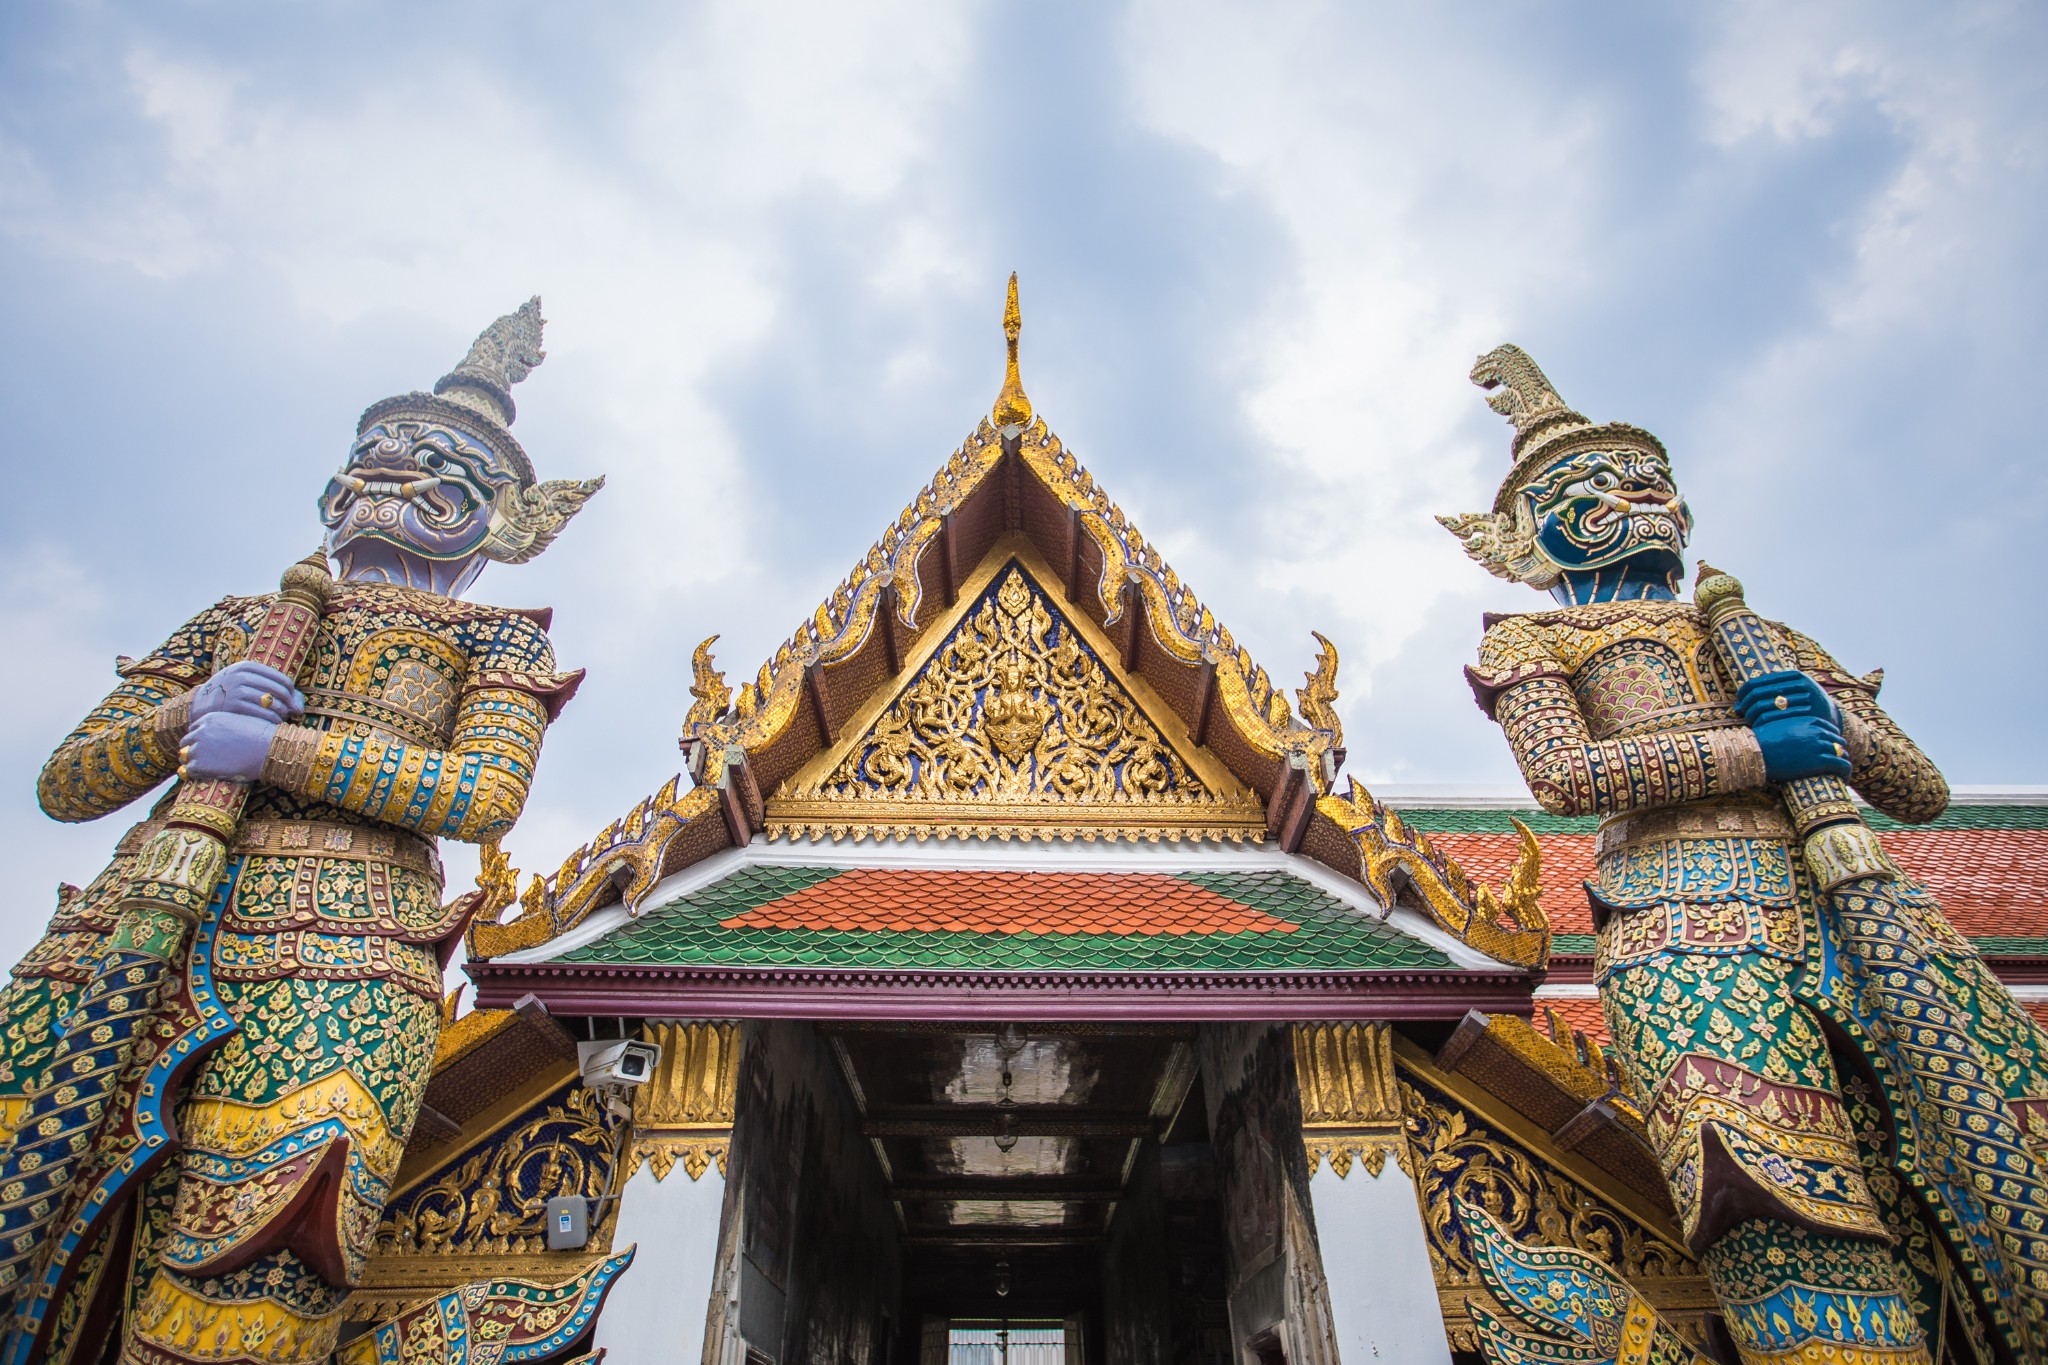 「泰国曼谷旅游攻略必去景点大全图」✅ 泰国曼谷旅游攻略必去景点大全图片及价格